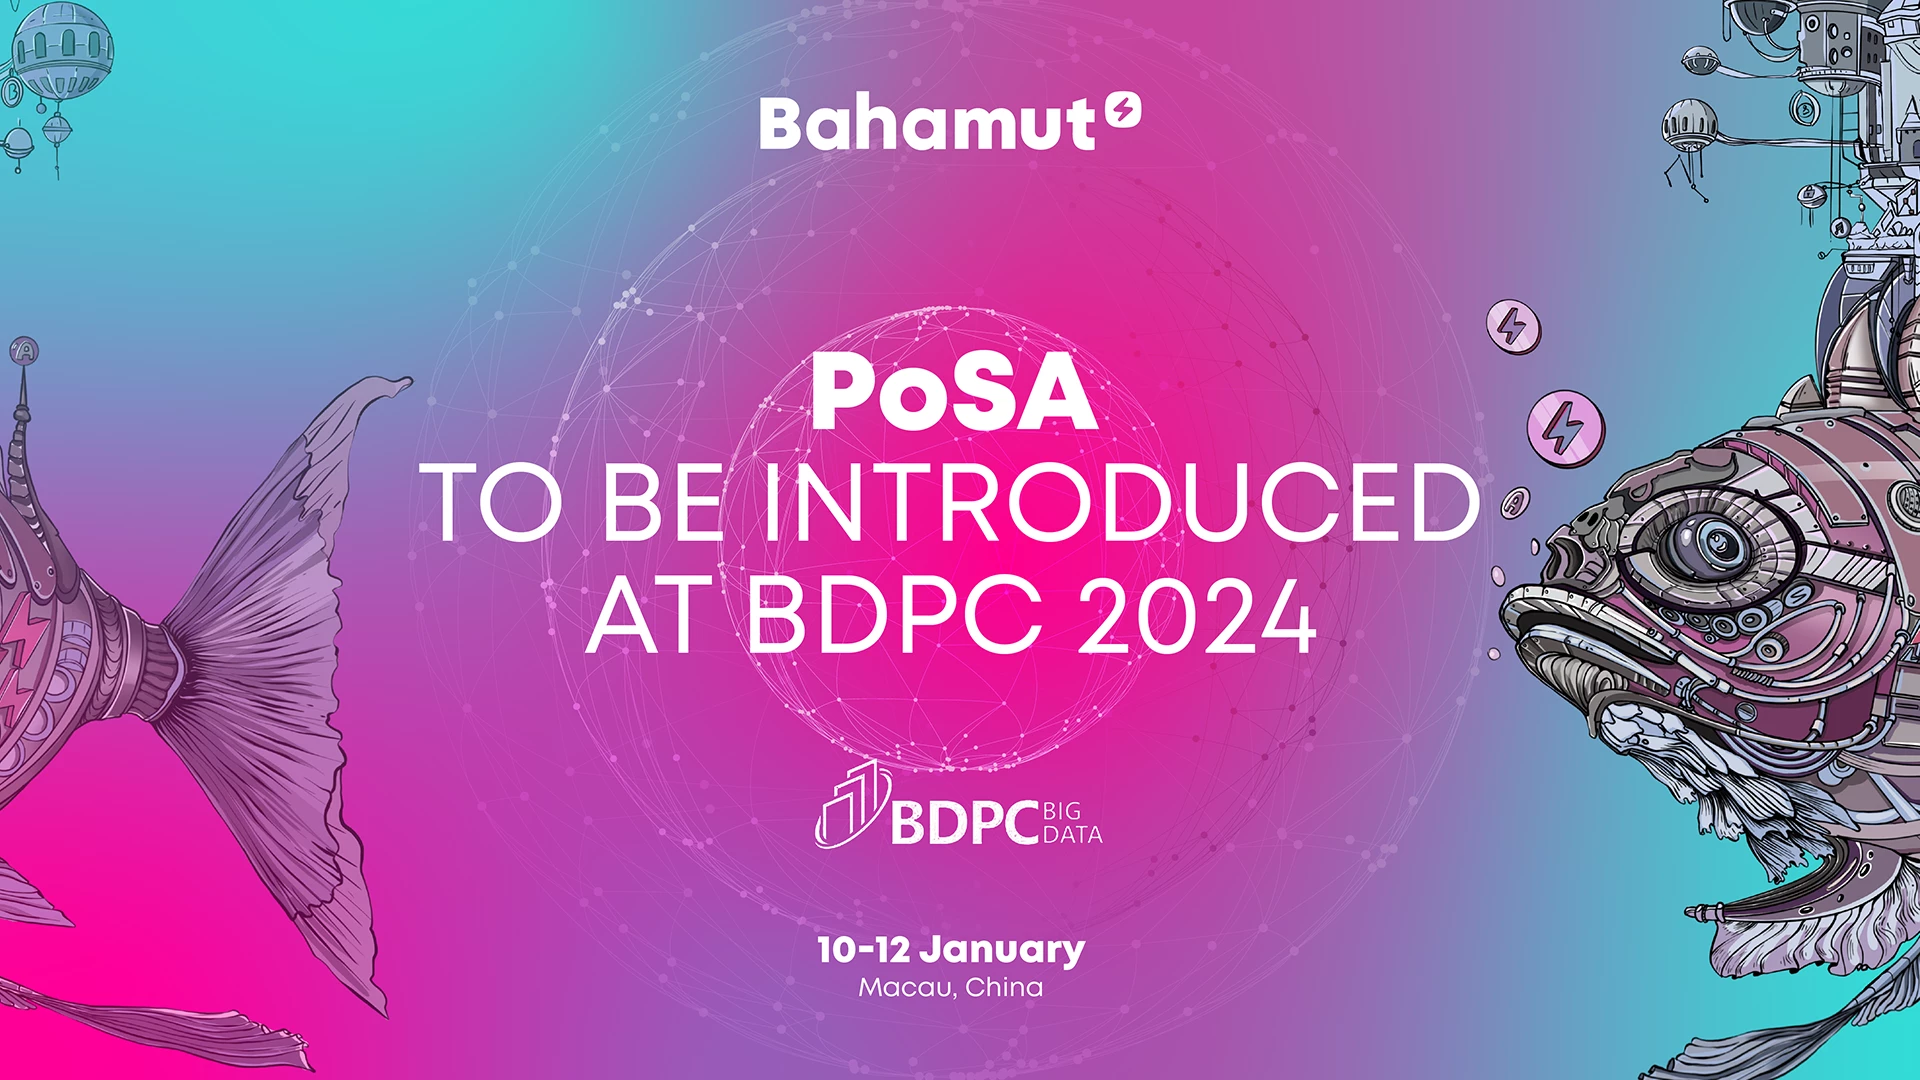 Le PoSA de Bahamut sera présenté au BDPC 2024